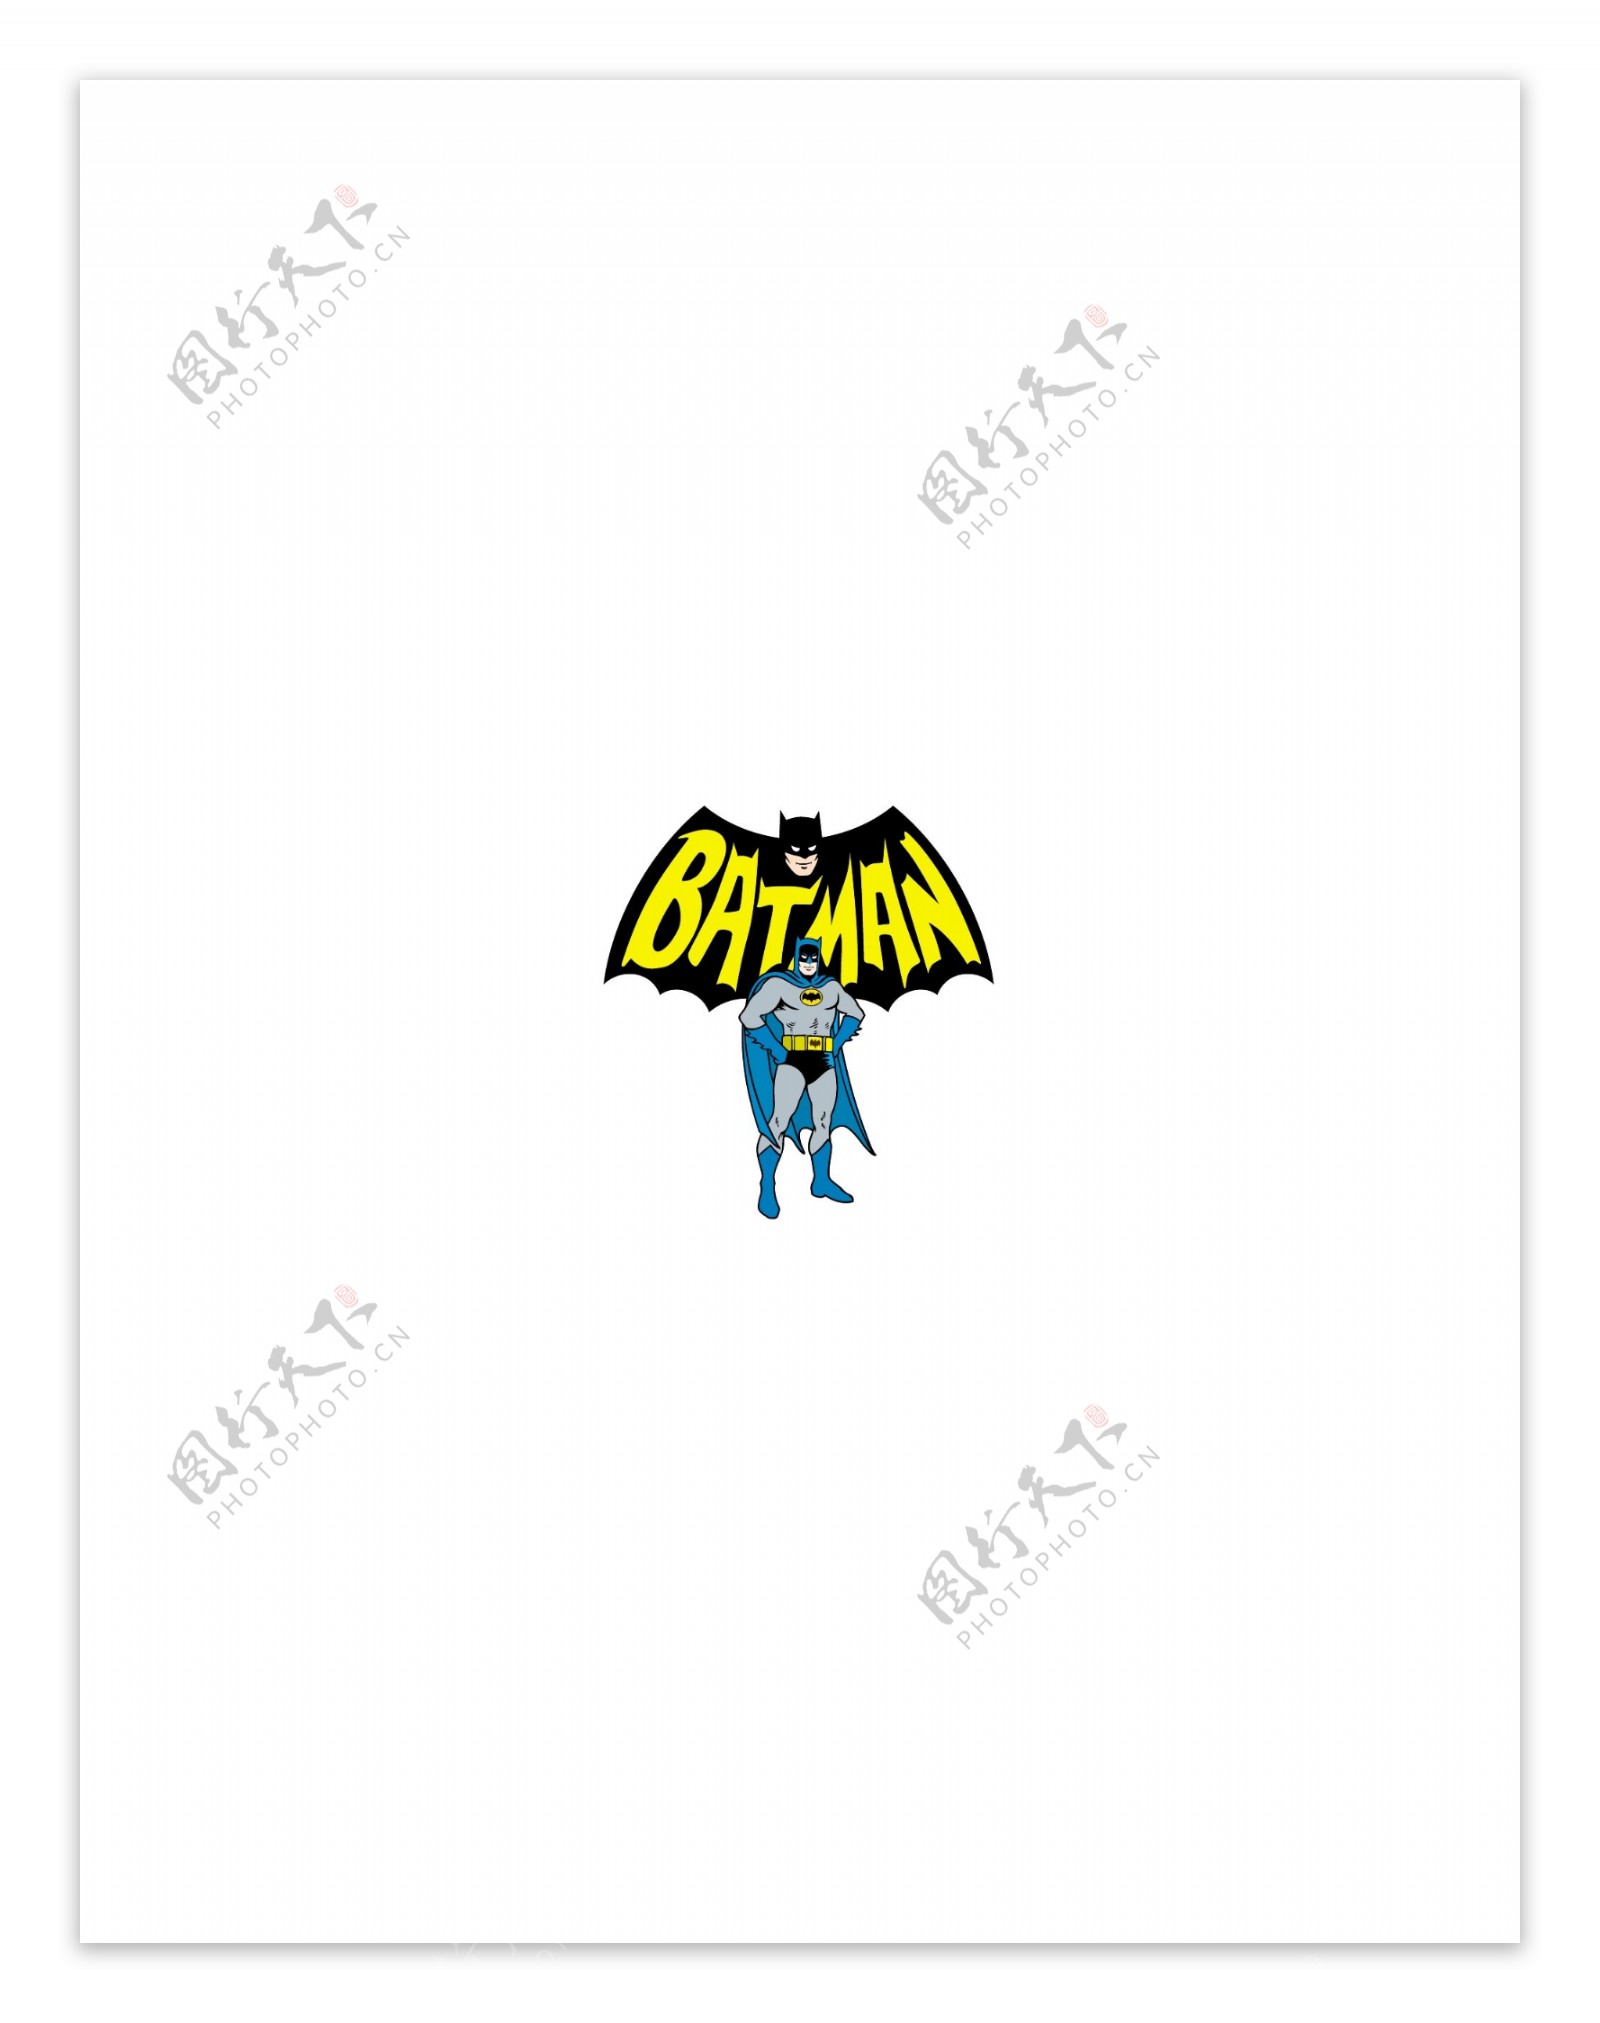 Batman5logo设计欣赏Batman5下载标志设计欣赏